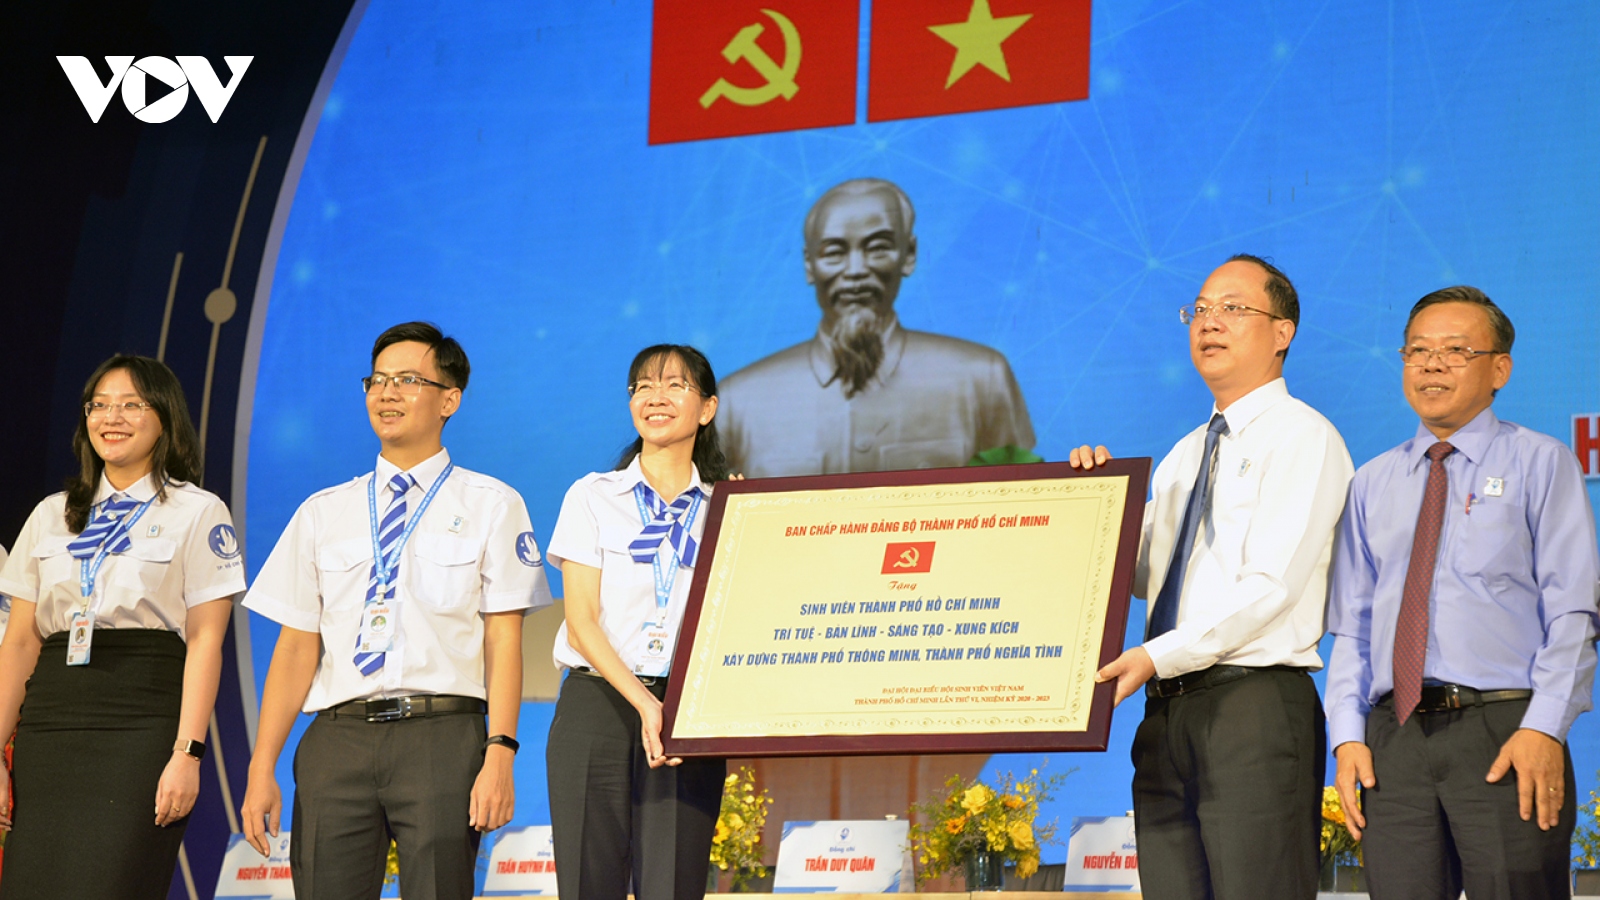 Đại hội Hội sinh viên Việt Nam TPHCM lần VI: Xây dựng lớp sinh viên bản lĩnh, sáng tạo